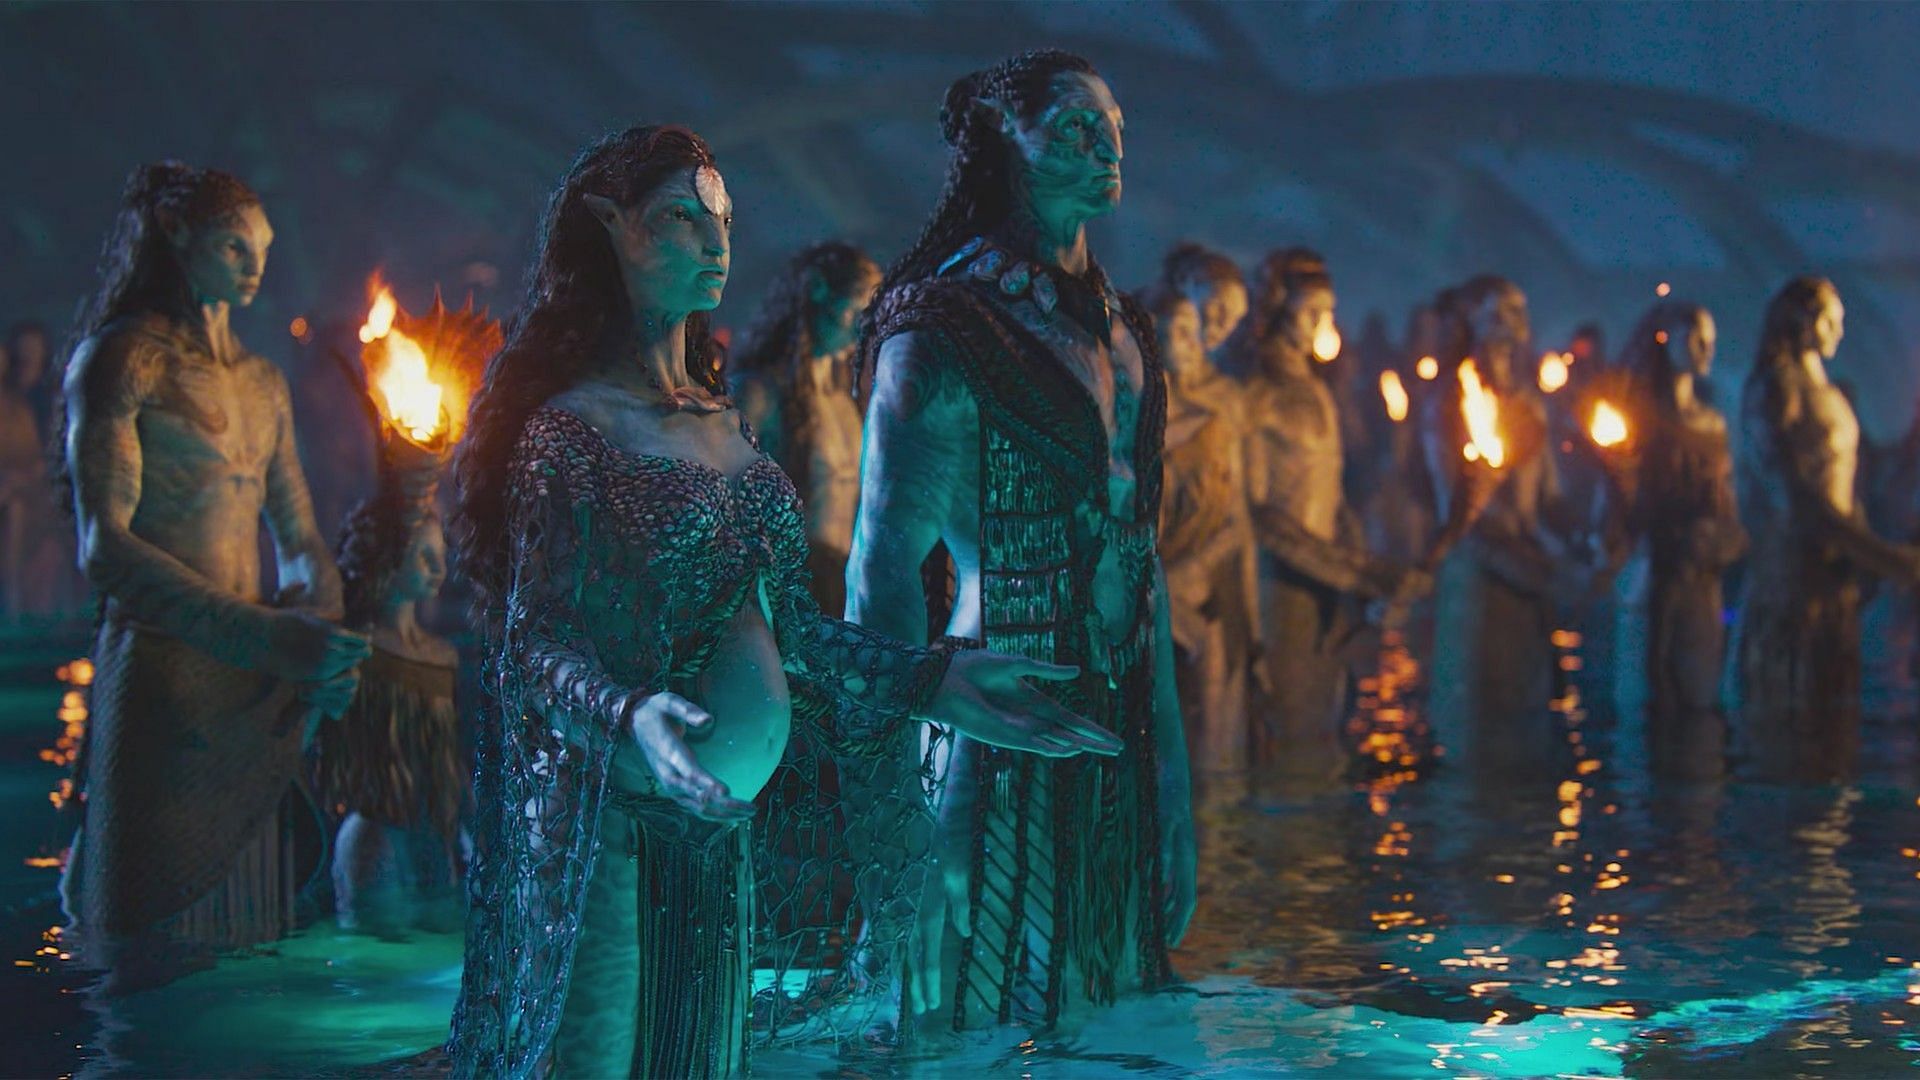 Trailer for Avatar 2: 5 major takeaways